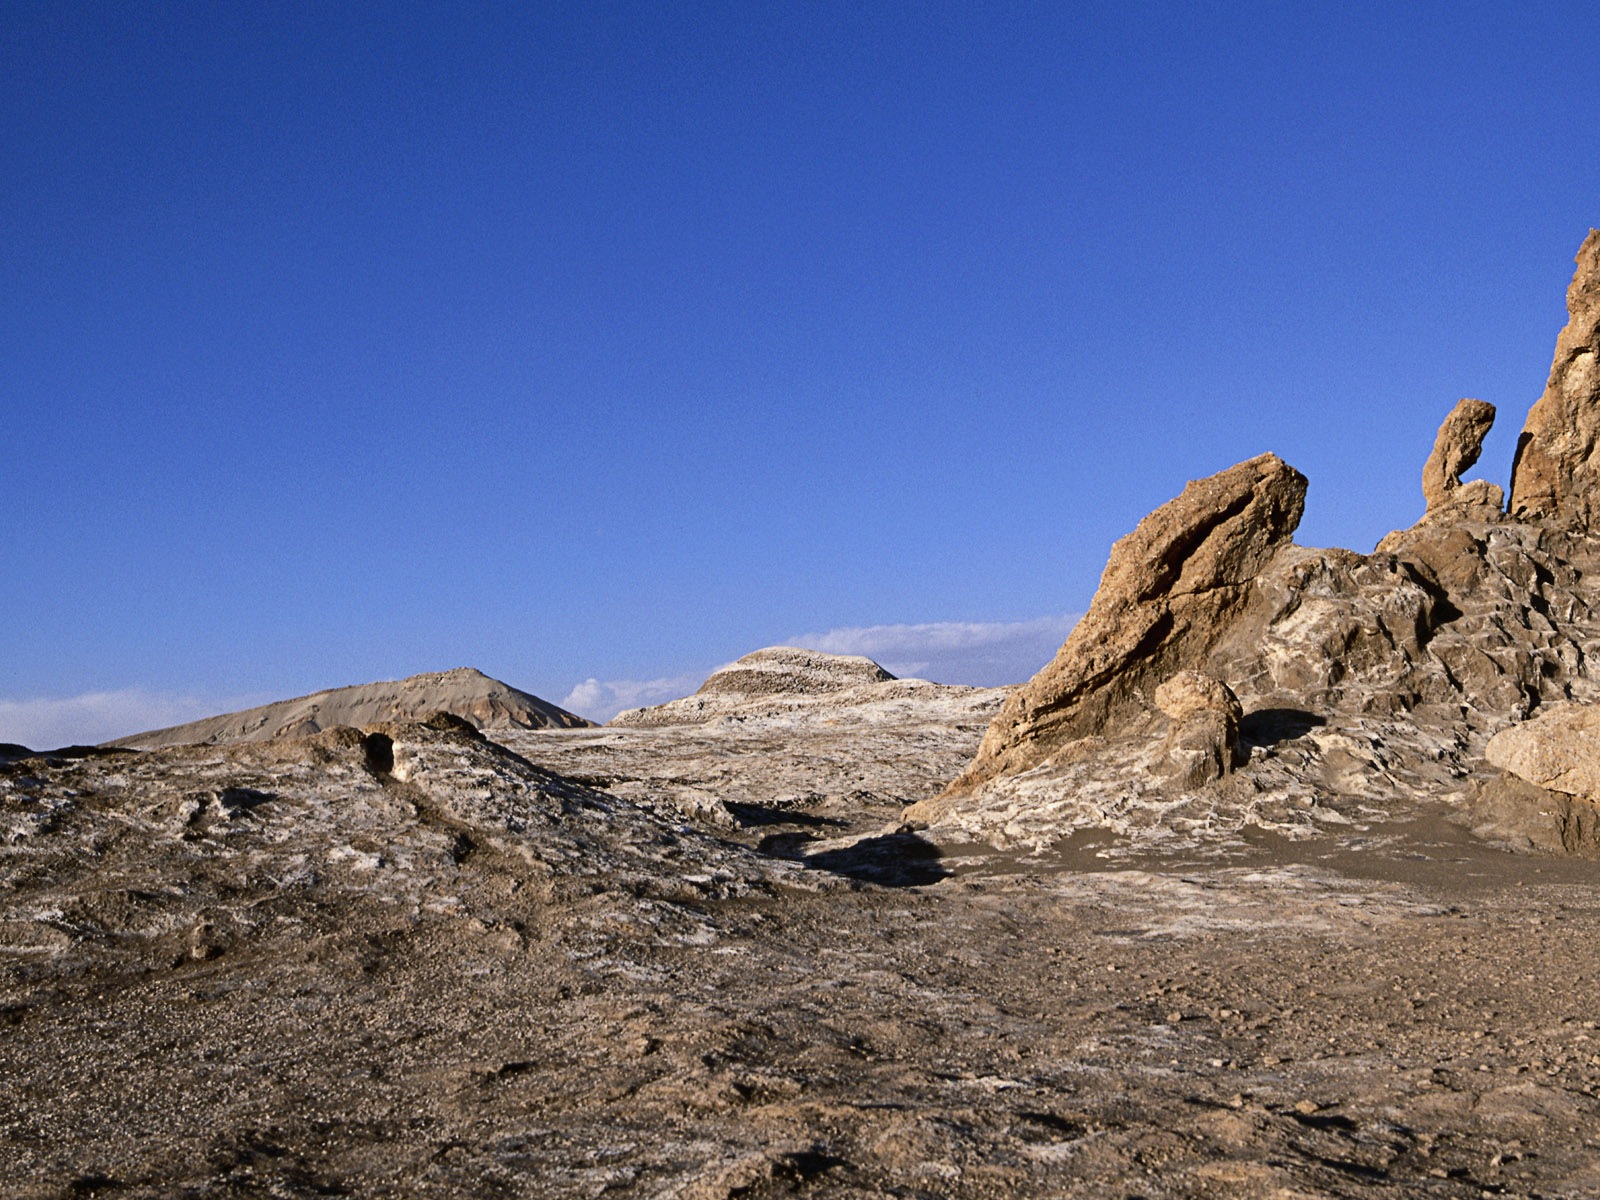 Les déserts chauds et arides, de Windows 8 fonds d'écran widescreen panoramique #11 - 1600x1200